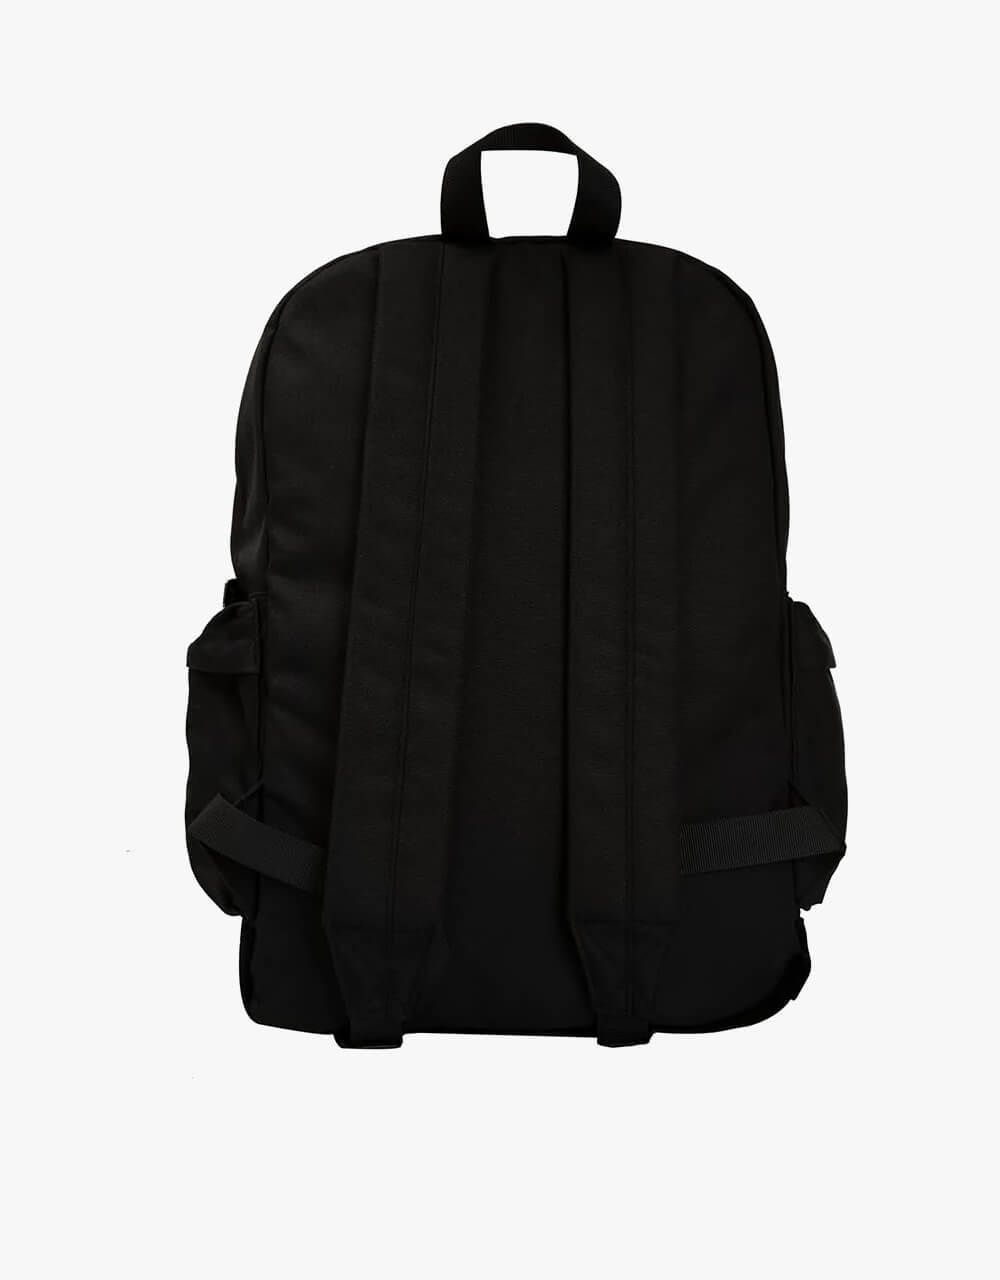 WKND Online School Backpack - Black